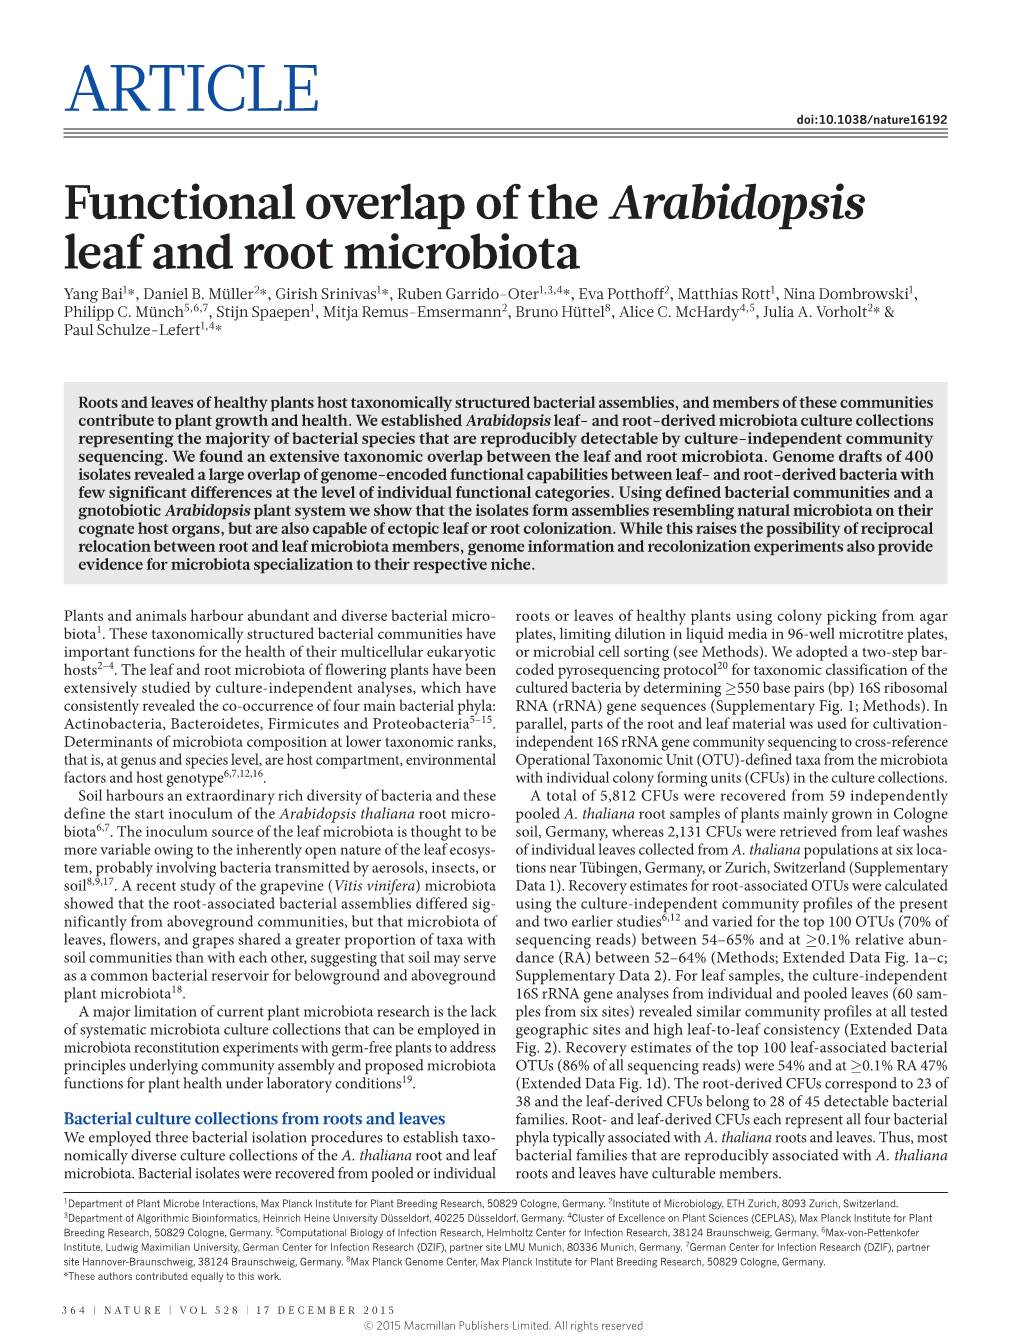 Functional Overlap of the Arabidopsis Leaf and Root Microbiota Yang Bai1*, Daniel B